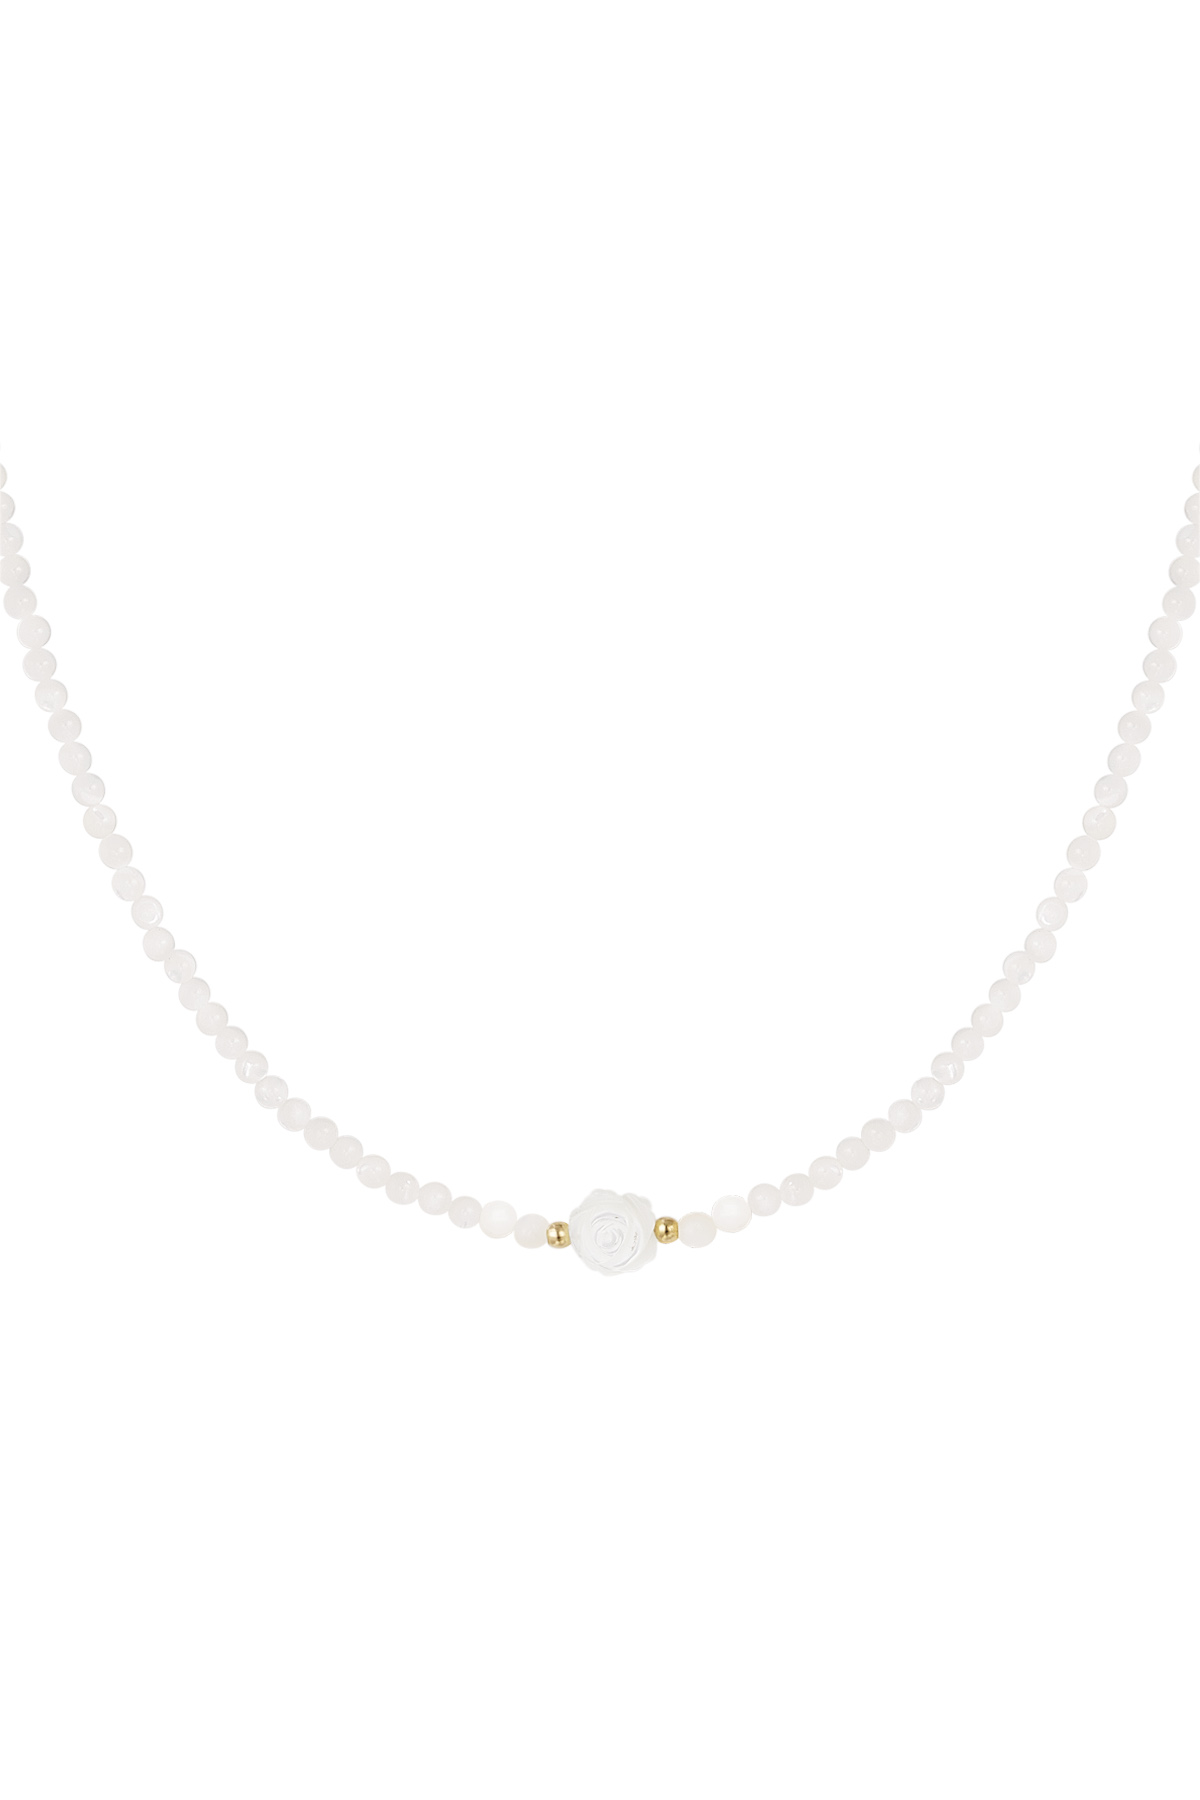 Gold / Collana perle bianche - bianco/oro Immagine24